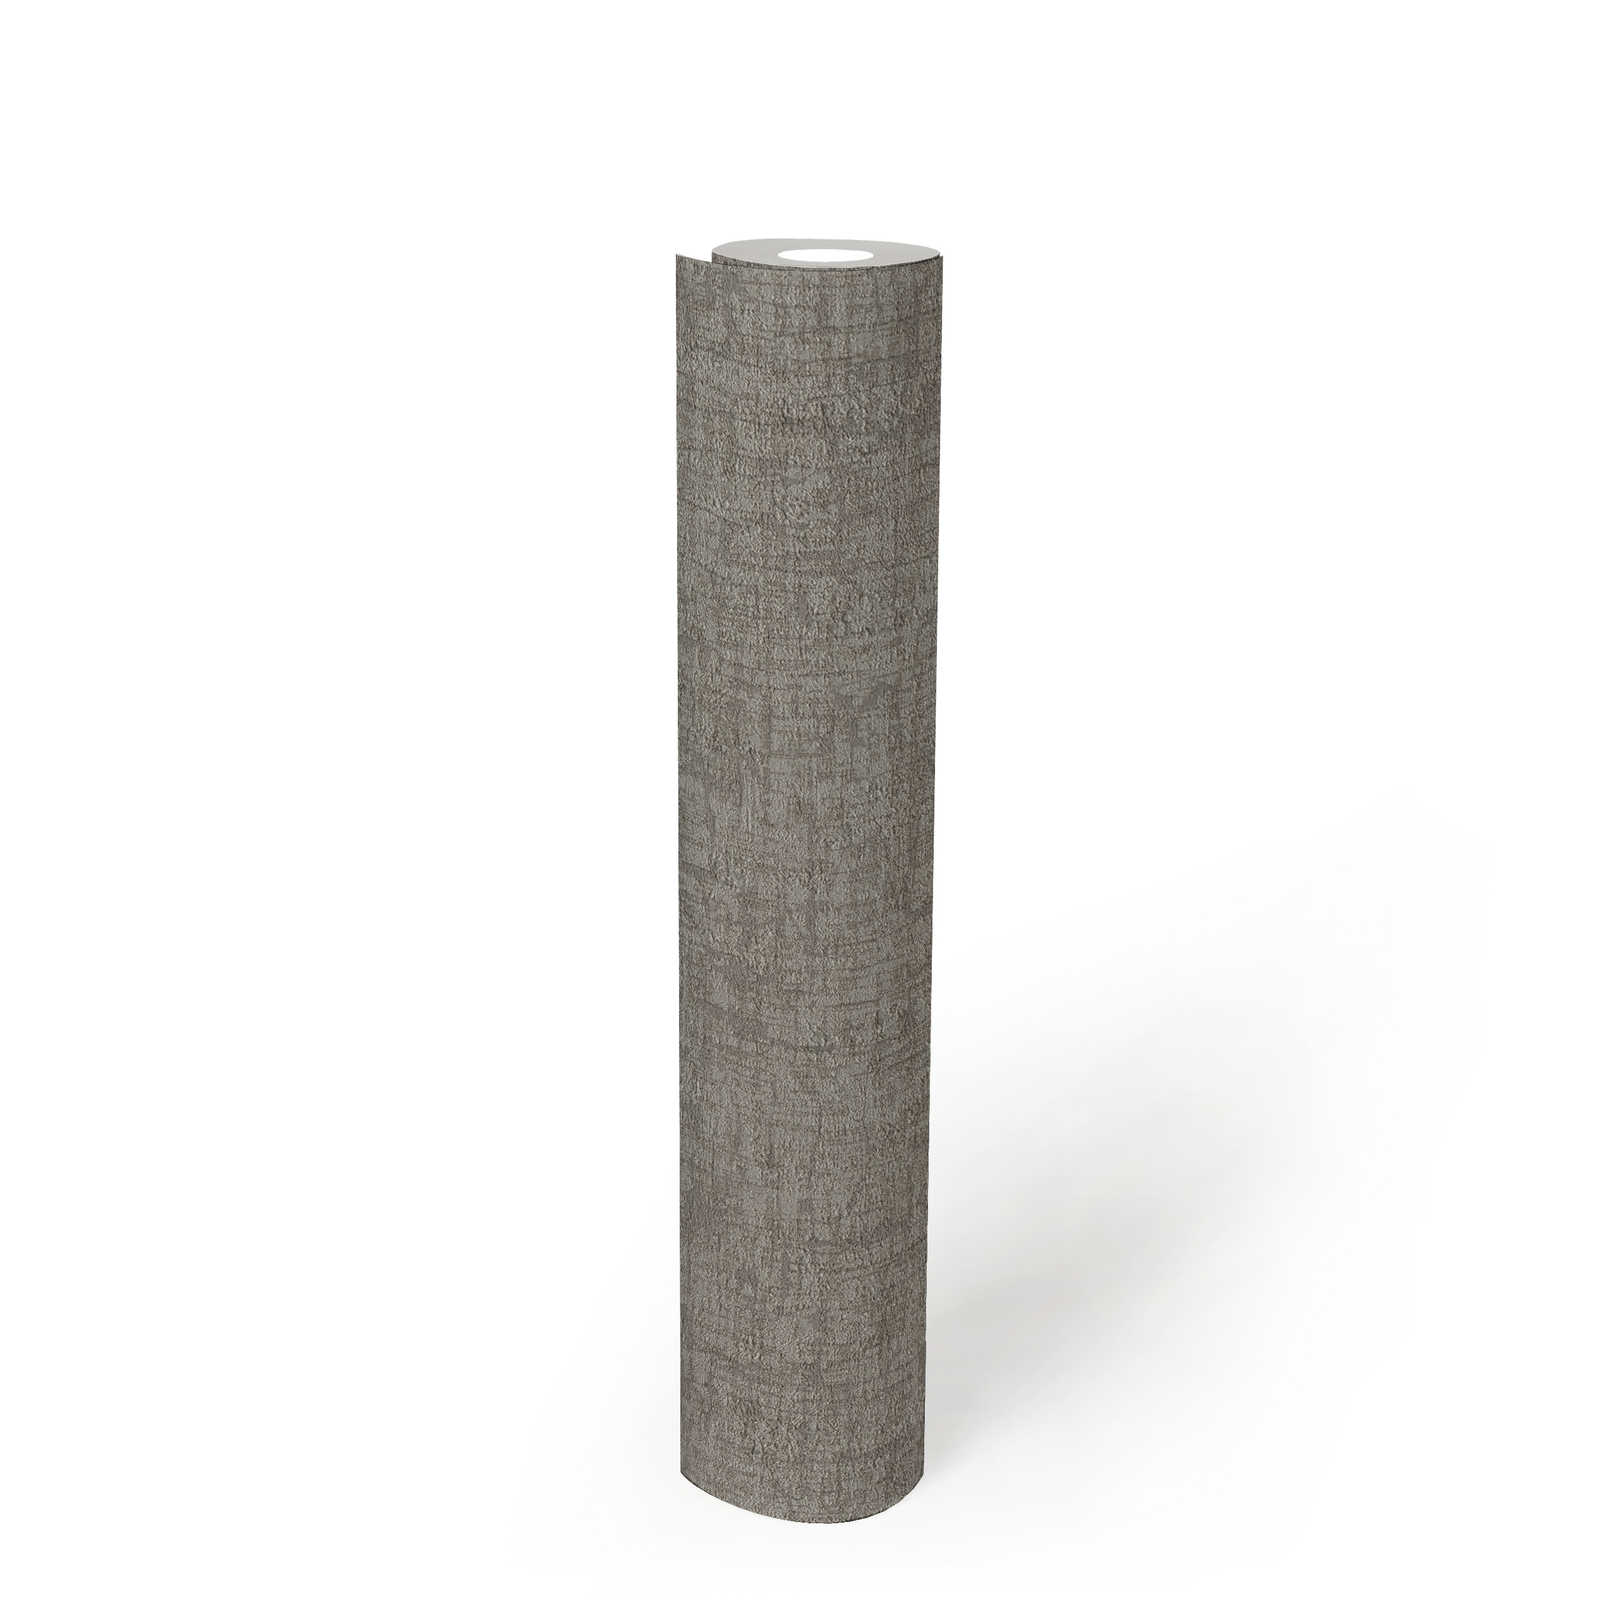             papier peint en papier intissé avec structure aspect textile - gris, gris foncé
        